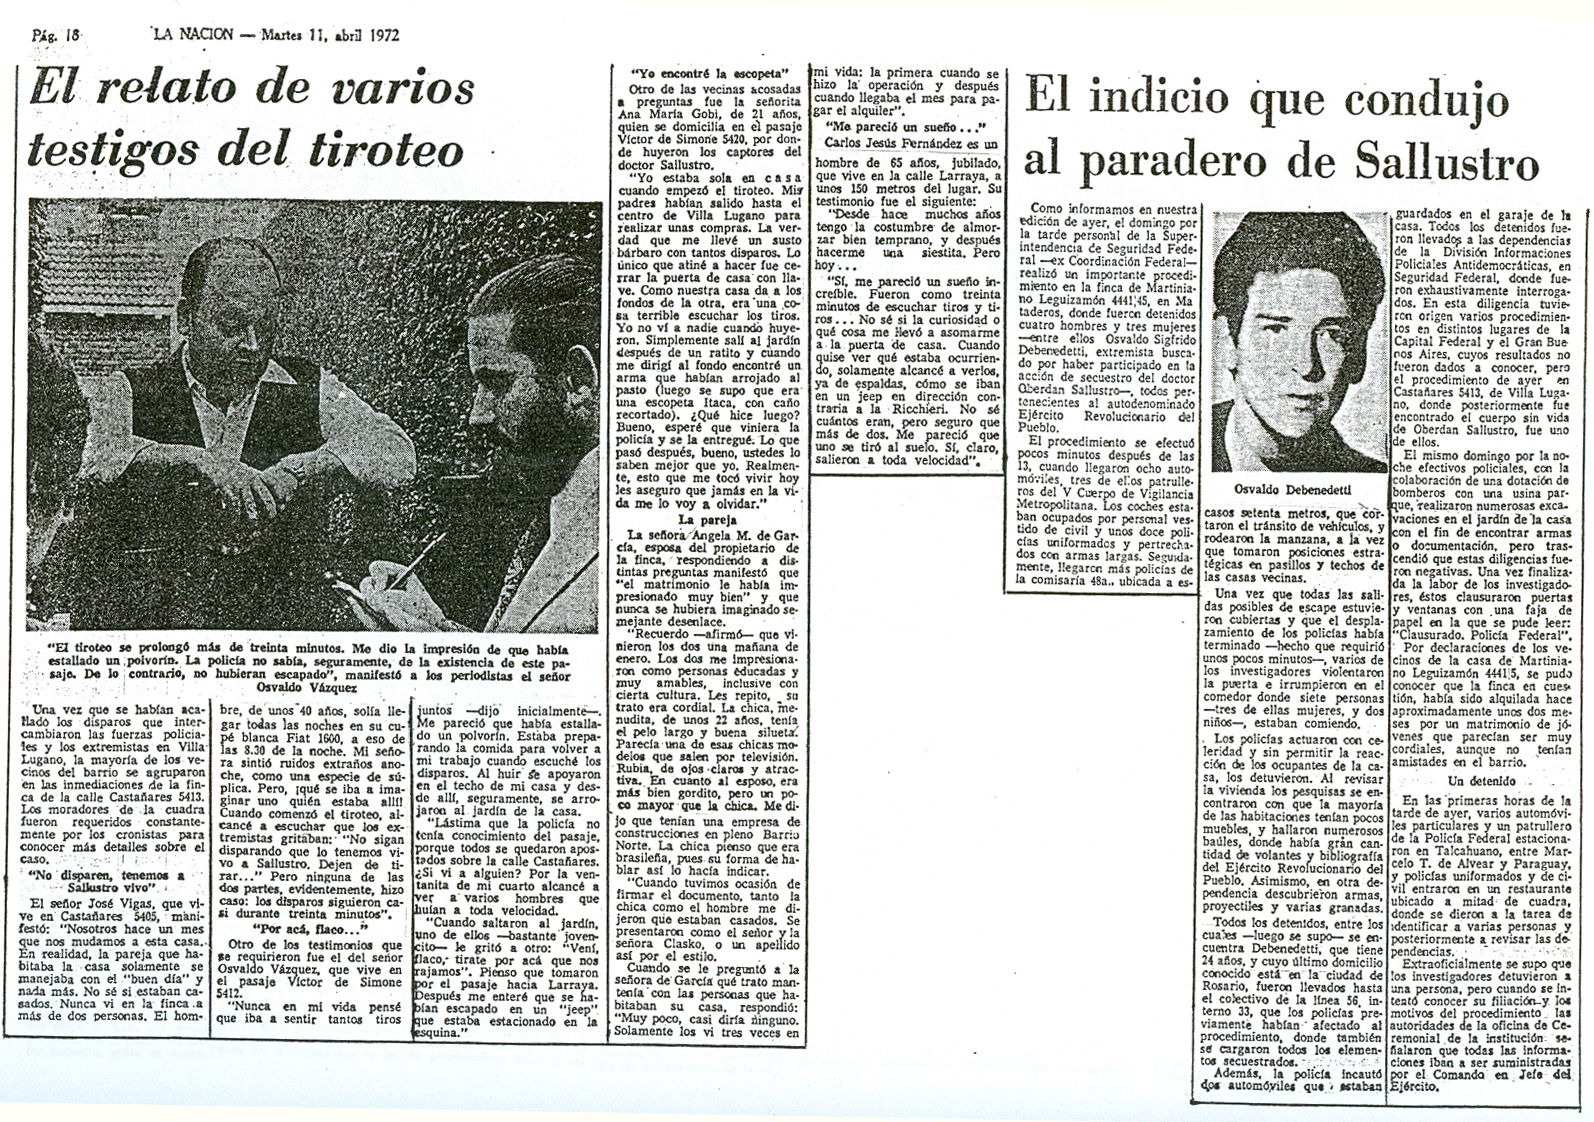 [1972-11-04+La+Nacion+-+Asesinatos+de+gral+Sanchez+y+Dr+Oberdan+Sallustro+16.jpg]